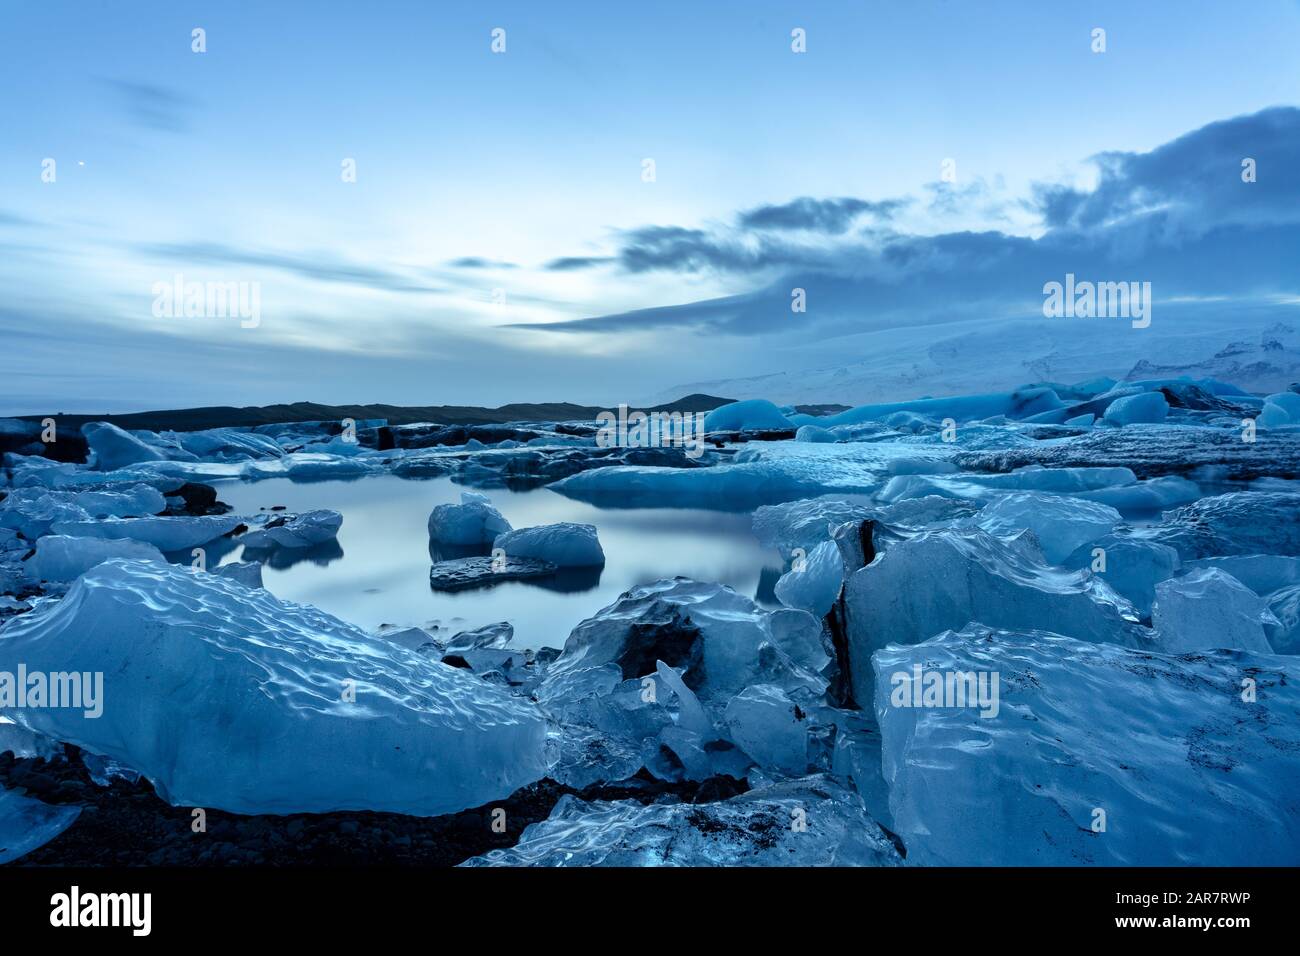 Island-Gletscher jokulsarlon am Abend Eisberge, die auf dem kalten, friedlichen Wasser nach Sonnenuntergang mit dramatischem Himmel schweben. Stockfoto